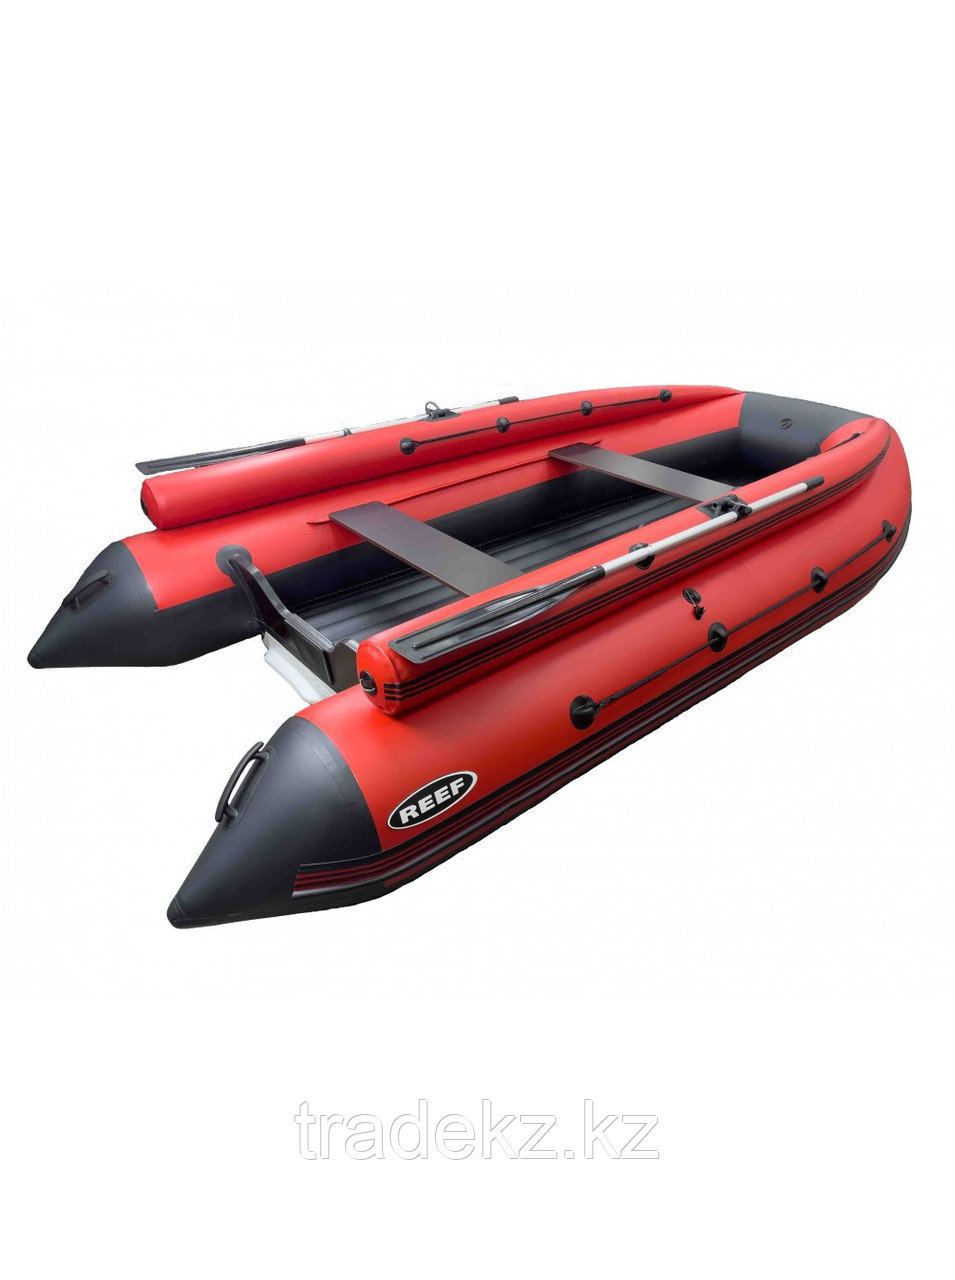 Лодка REEF-360 F НД стеклопластиковый интерцептер красный/черный